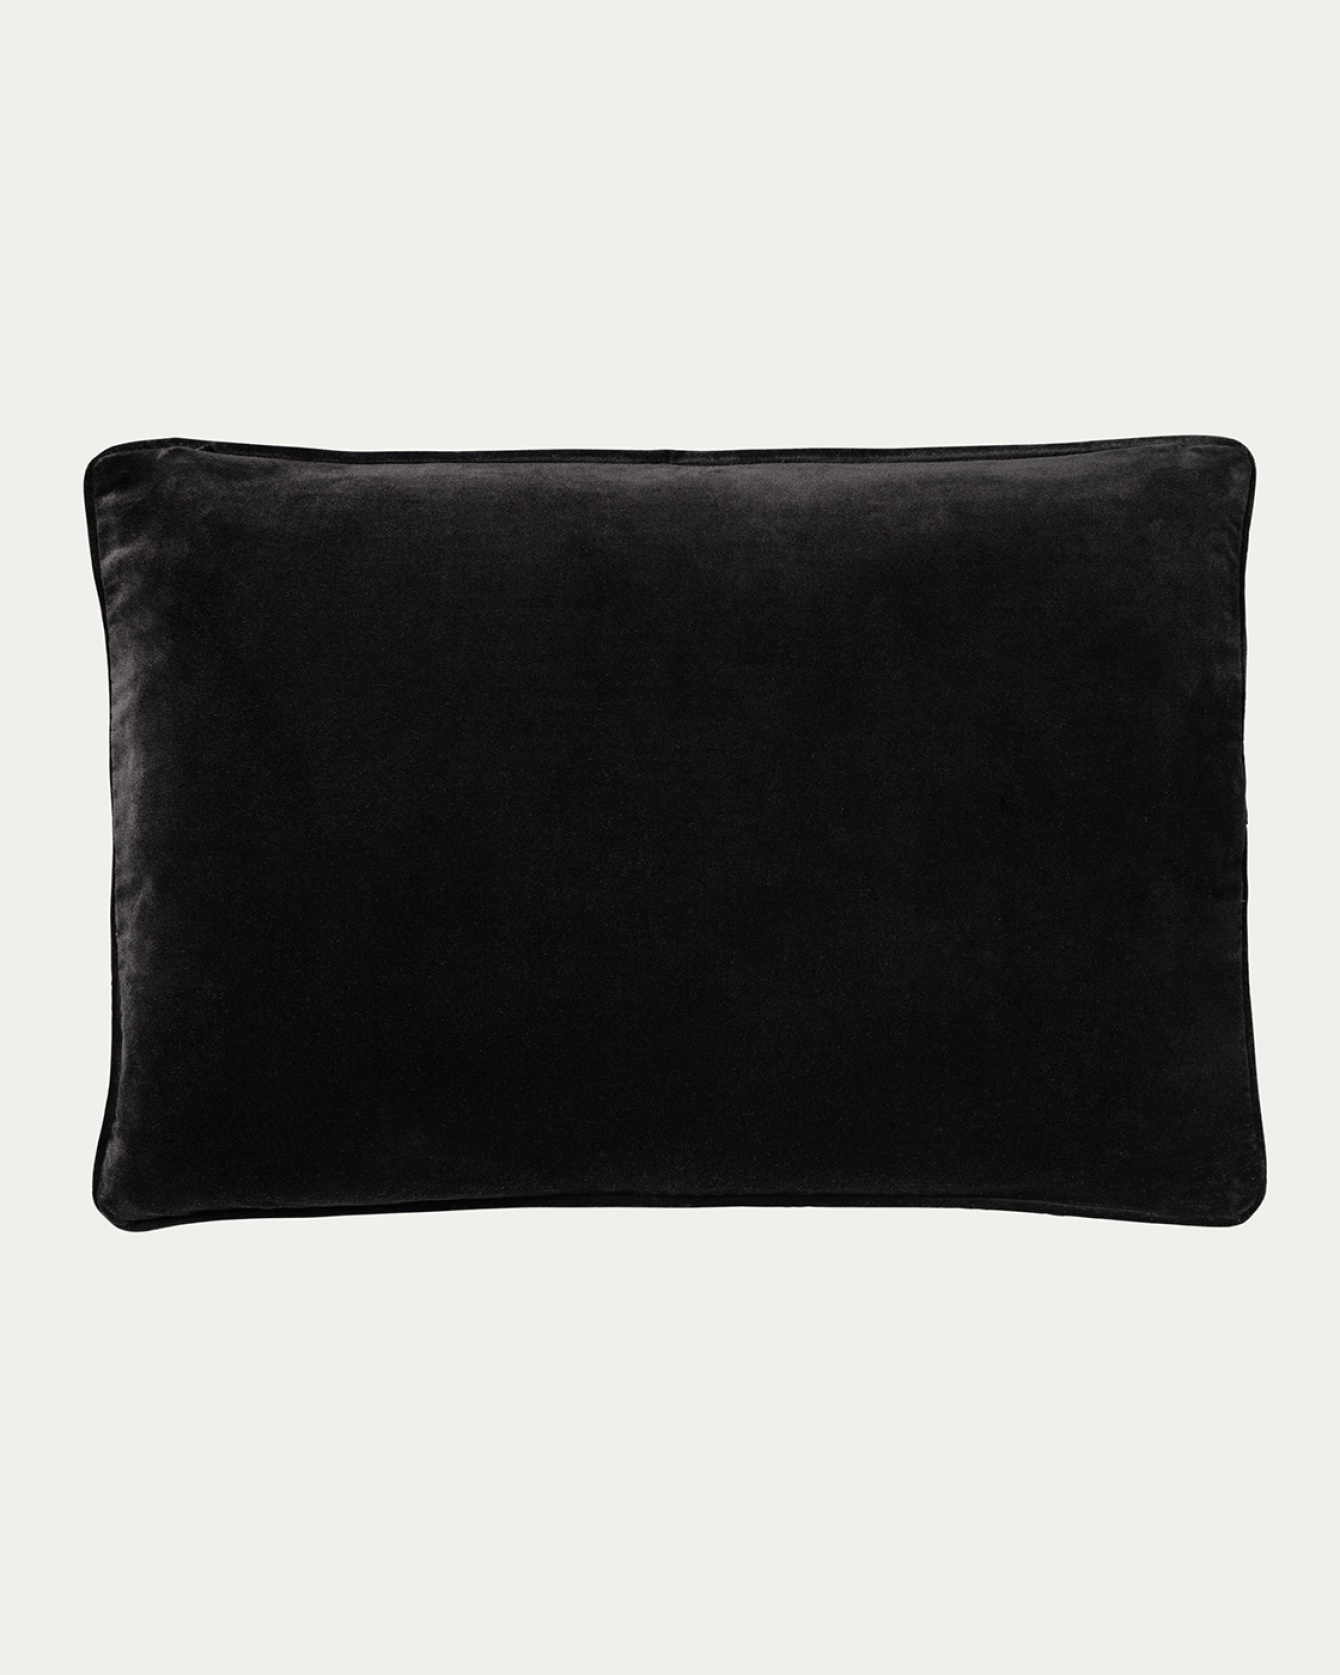 Produktbild schwarz PAOLO Kissenhülle aus weichem Samt aus bio-baumwolle von LINUM DESIGN. Größe 40x60 cm.